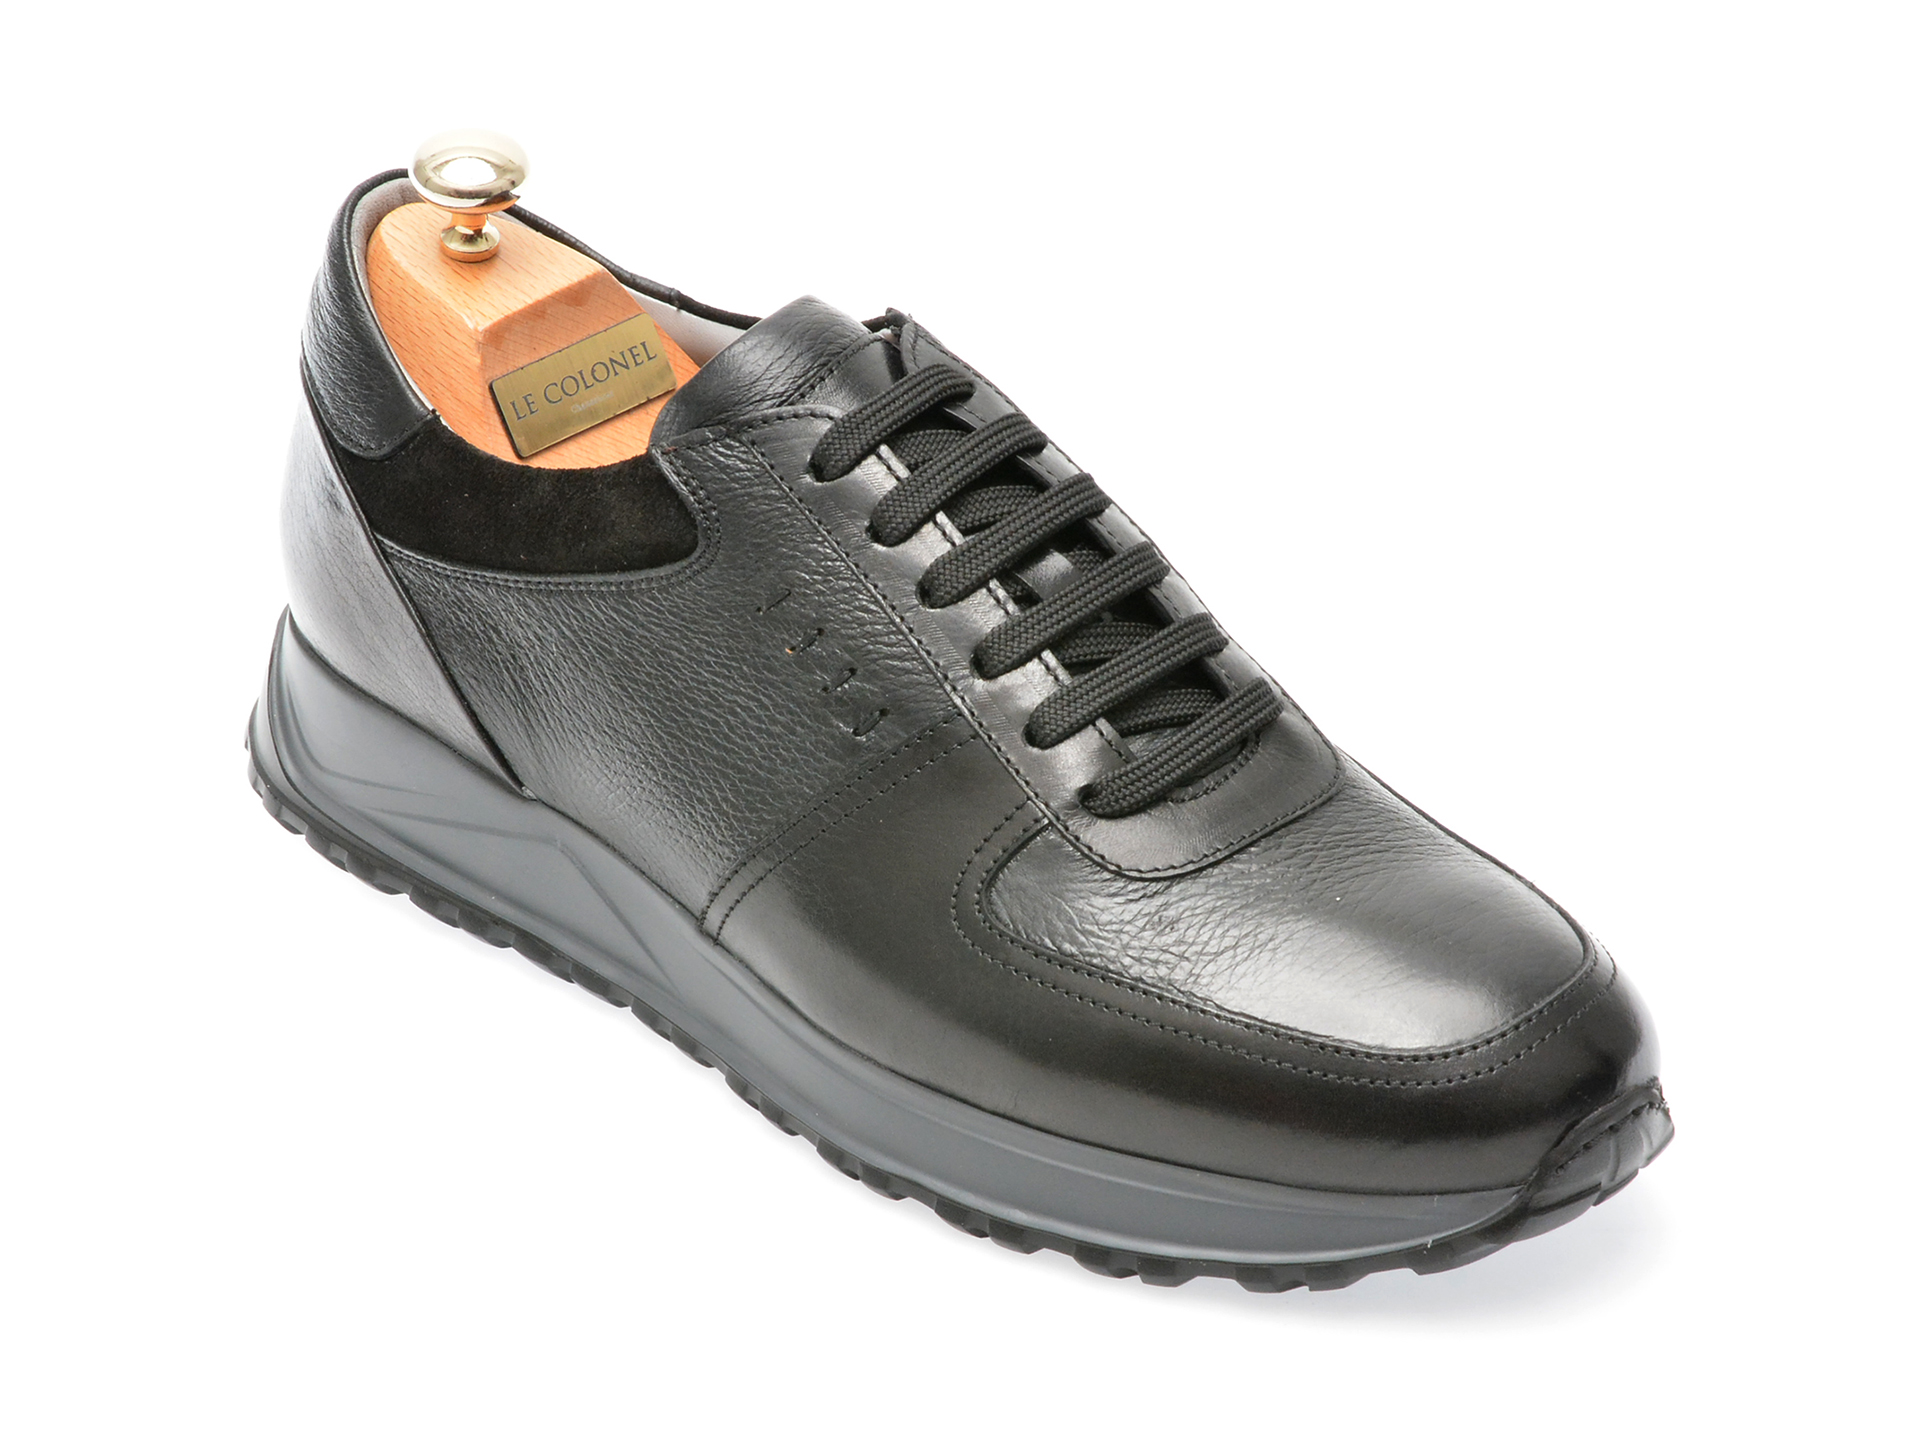 Pantofi LE COLONEL negri, 64318, din piele naturala Le Colonel